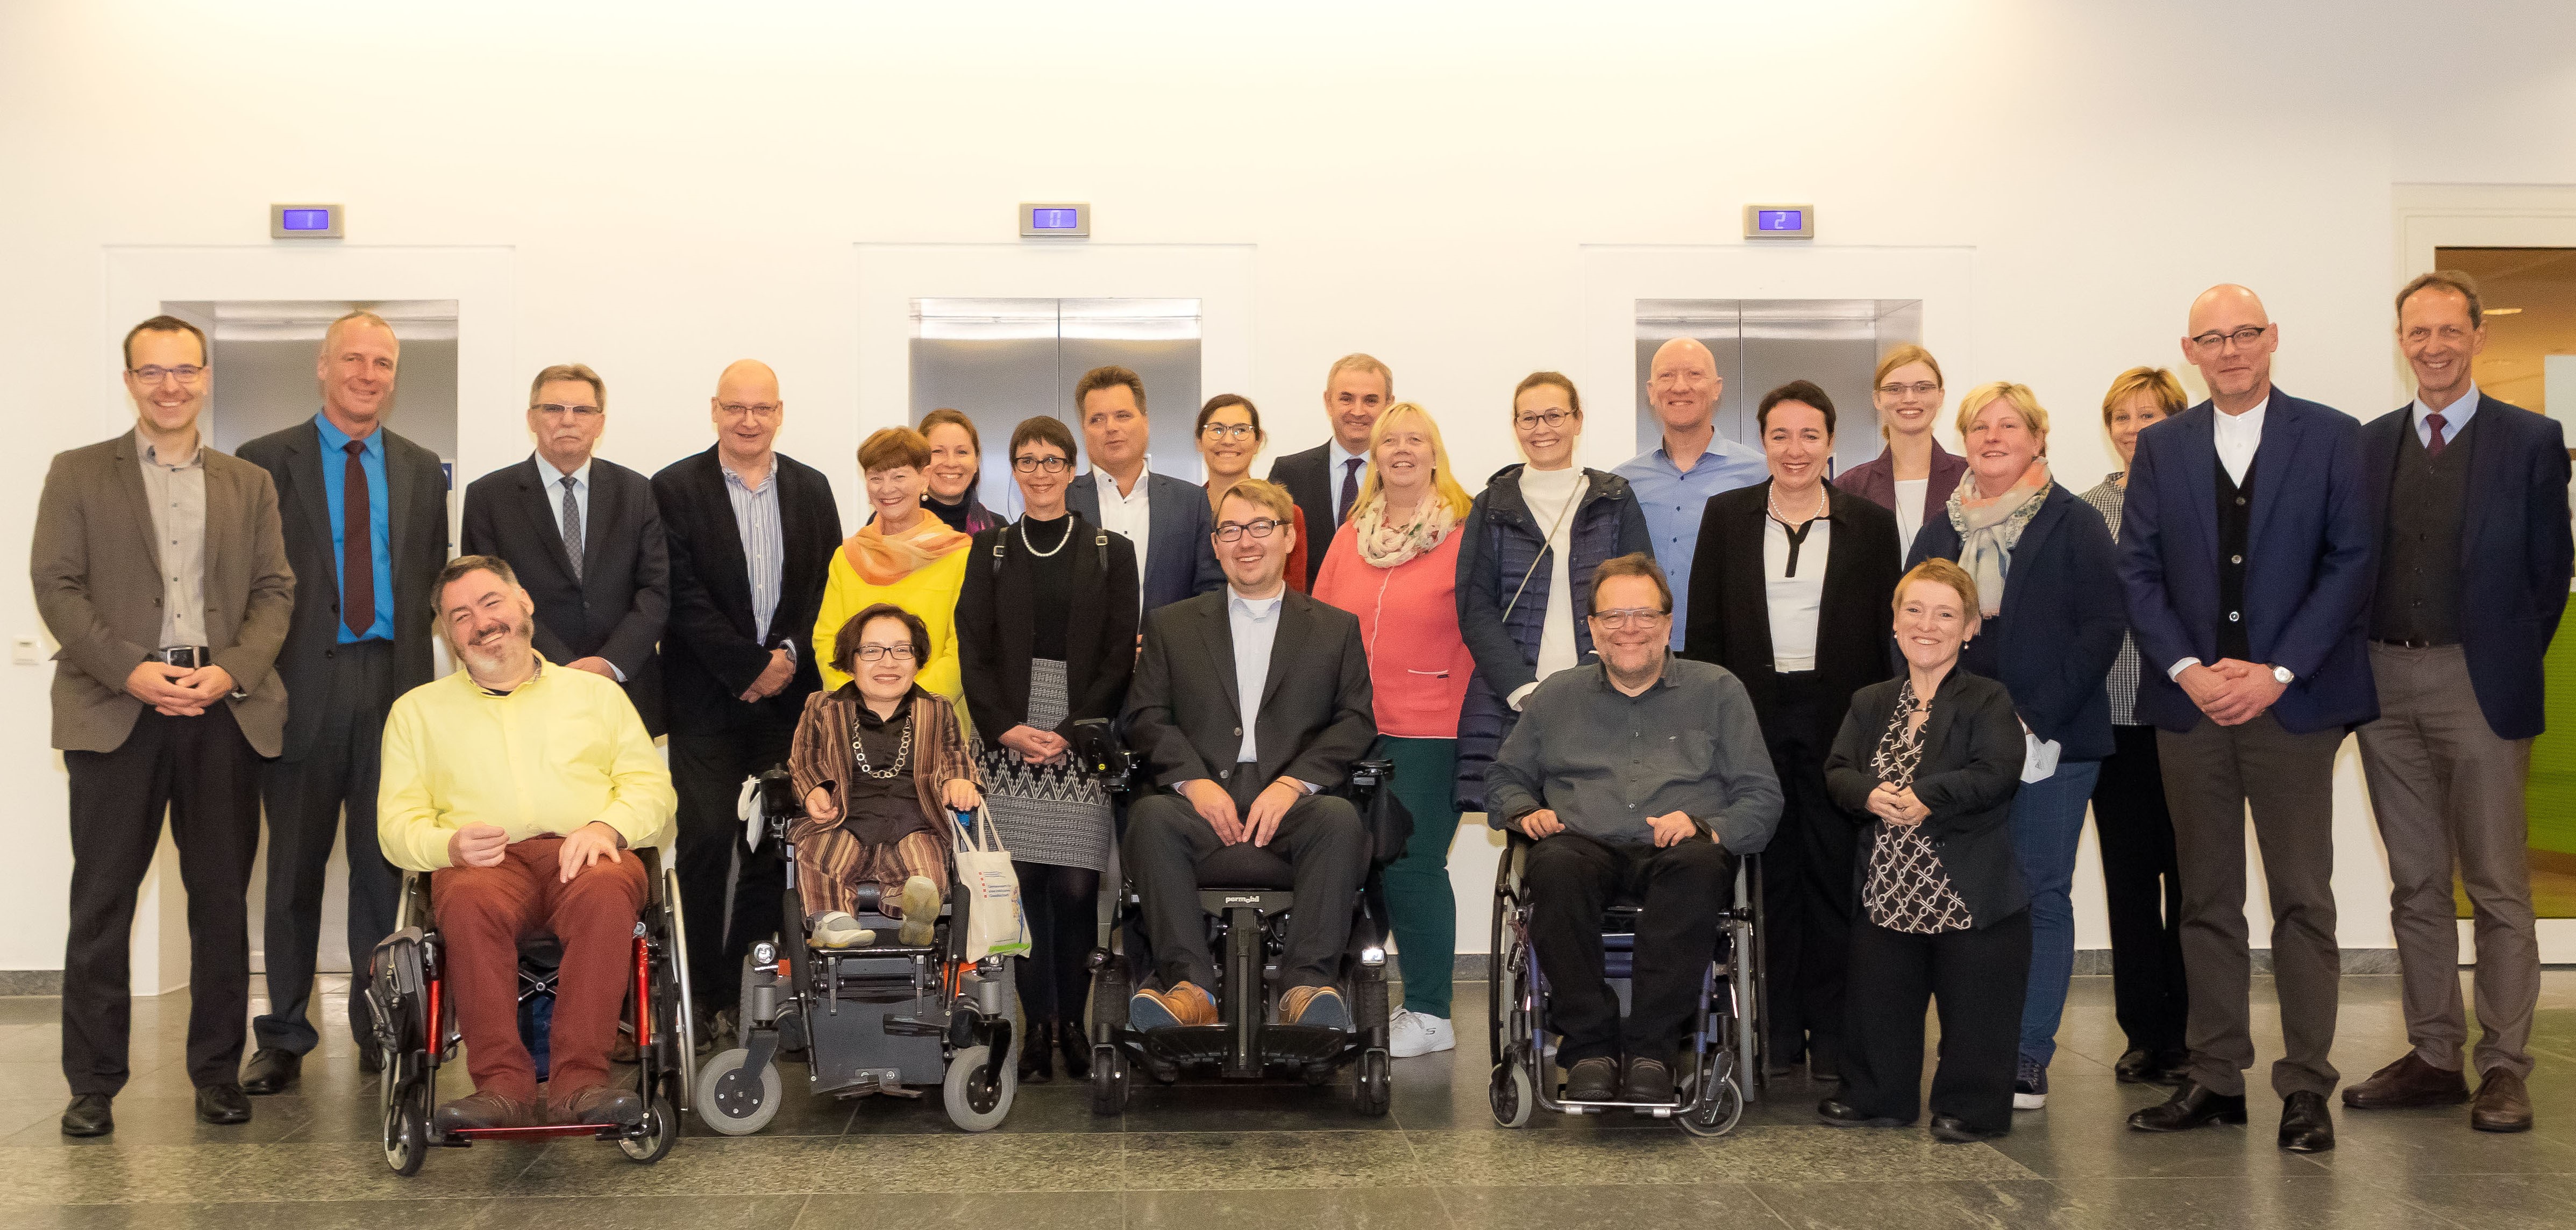 Gruppenbild der Behindertenbeauftragten des Bundes und der Länder (verweist auf: 62. Treffen der Behindertenbeauftragten des Bundes und der Länder)